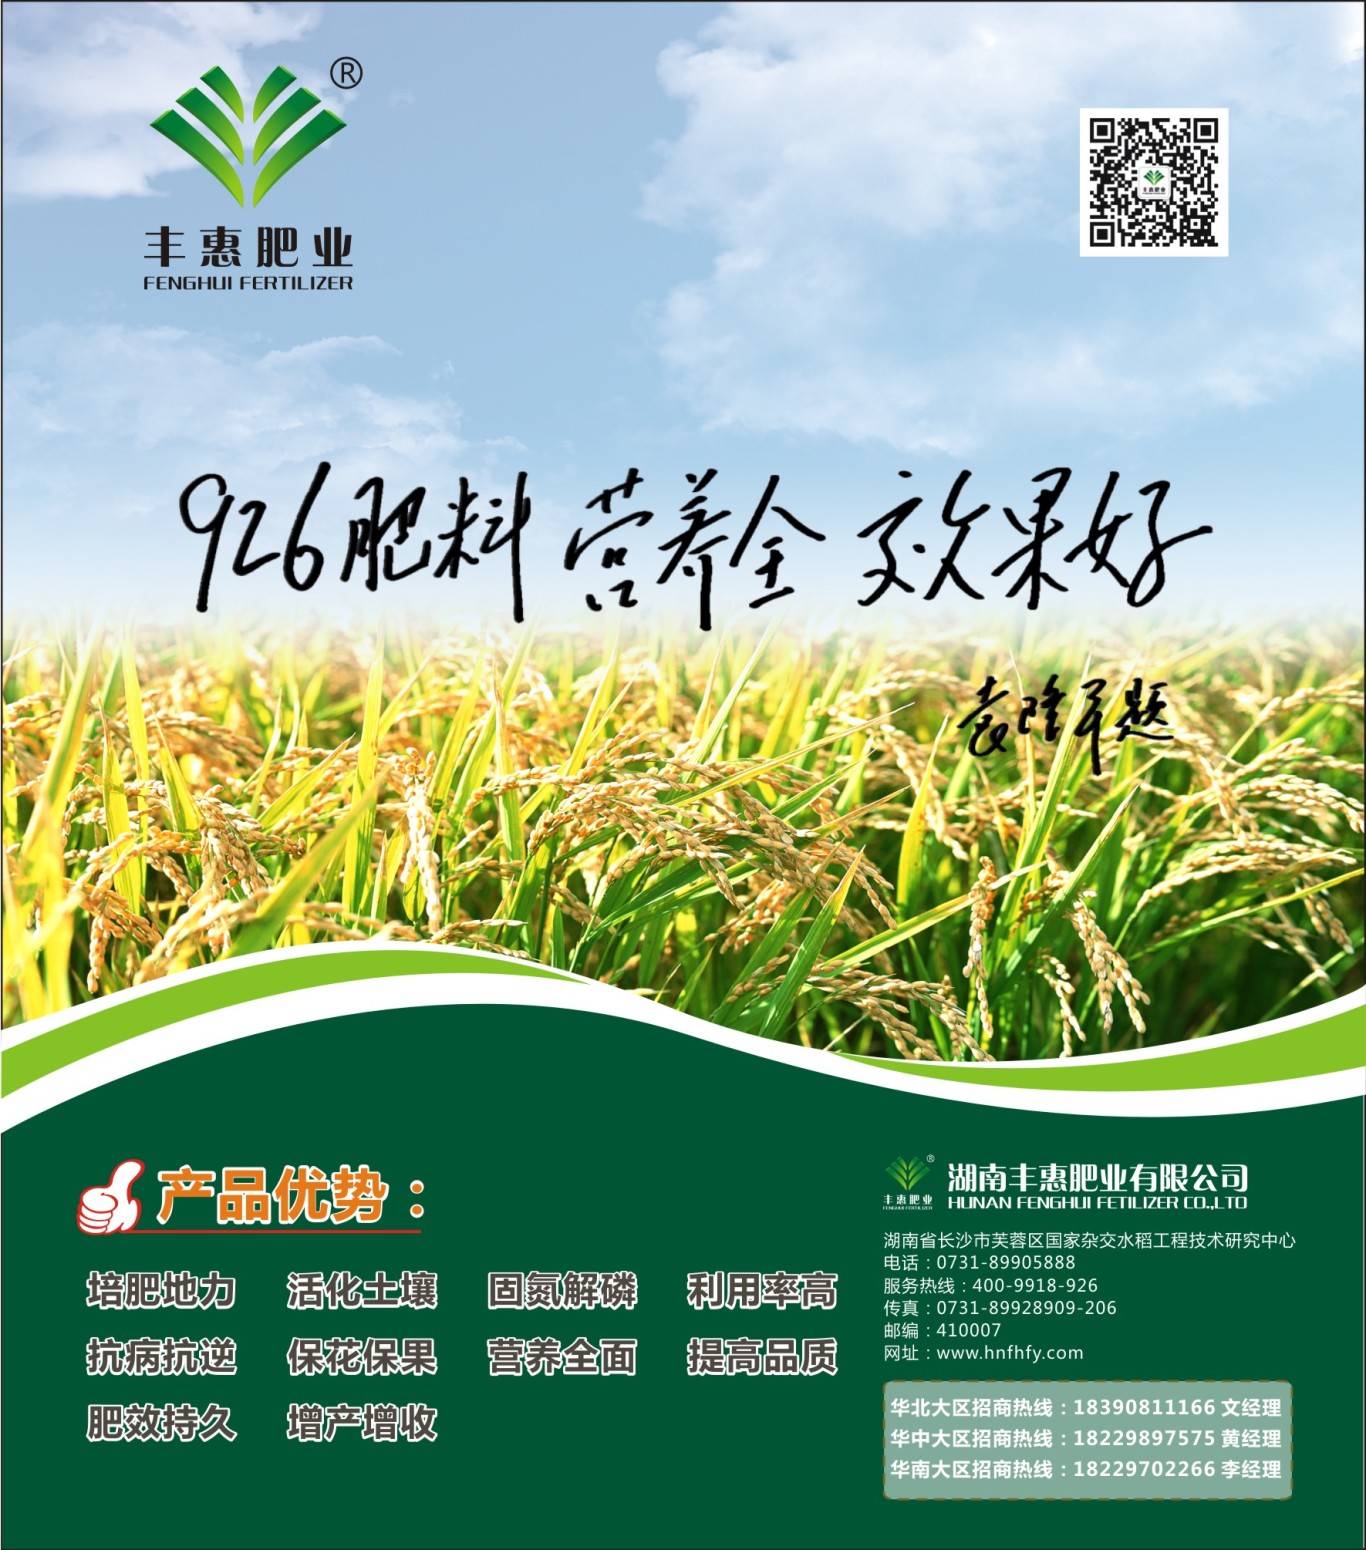 湖南丰惠肥业报纸海报设计图1